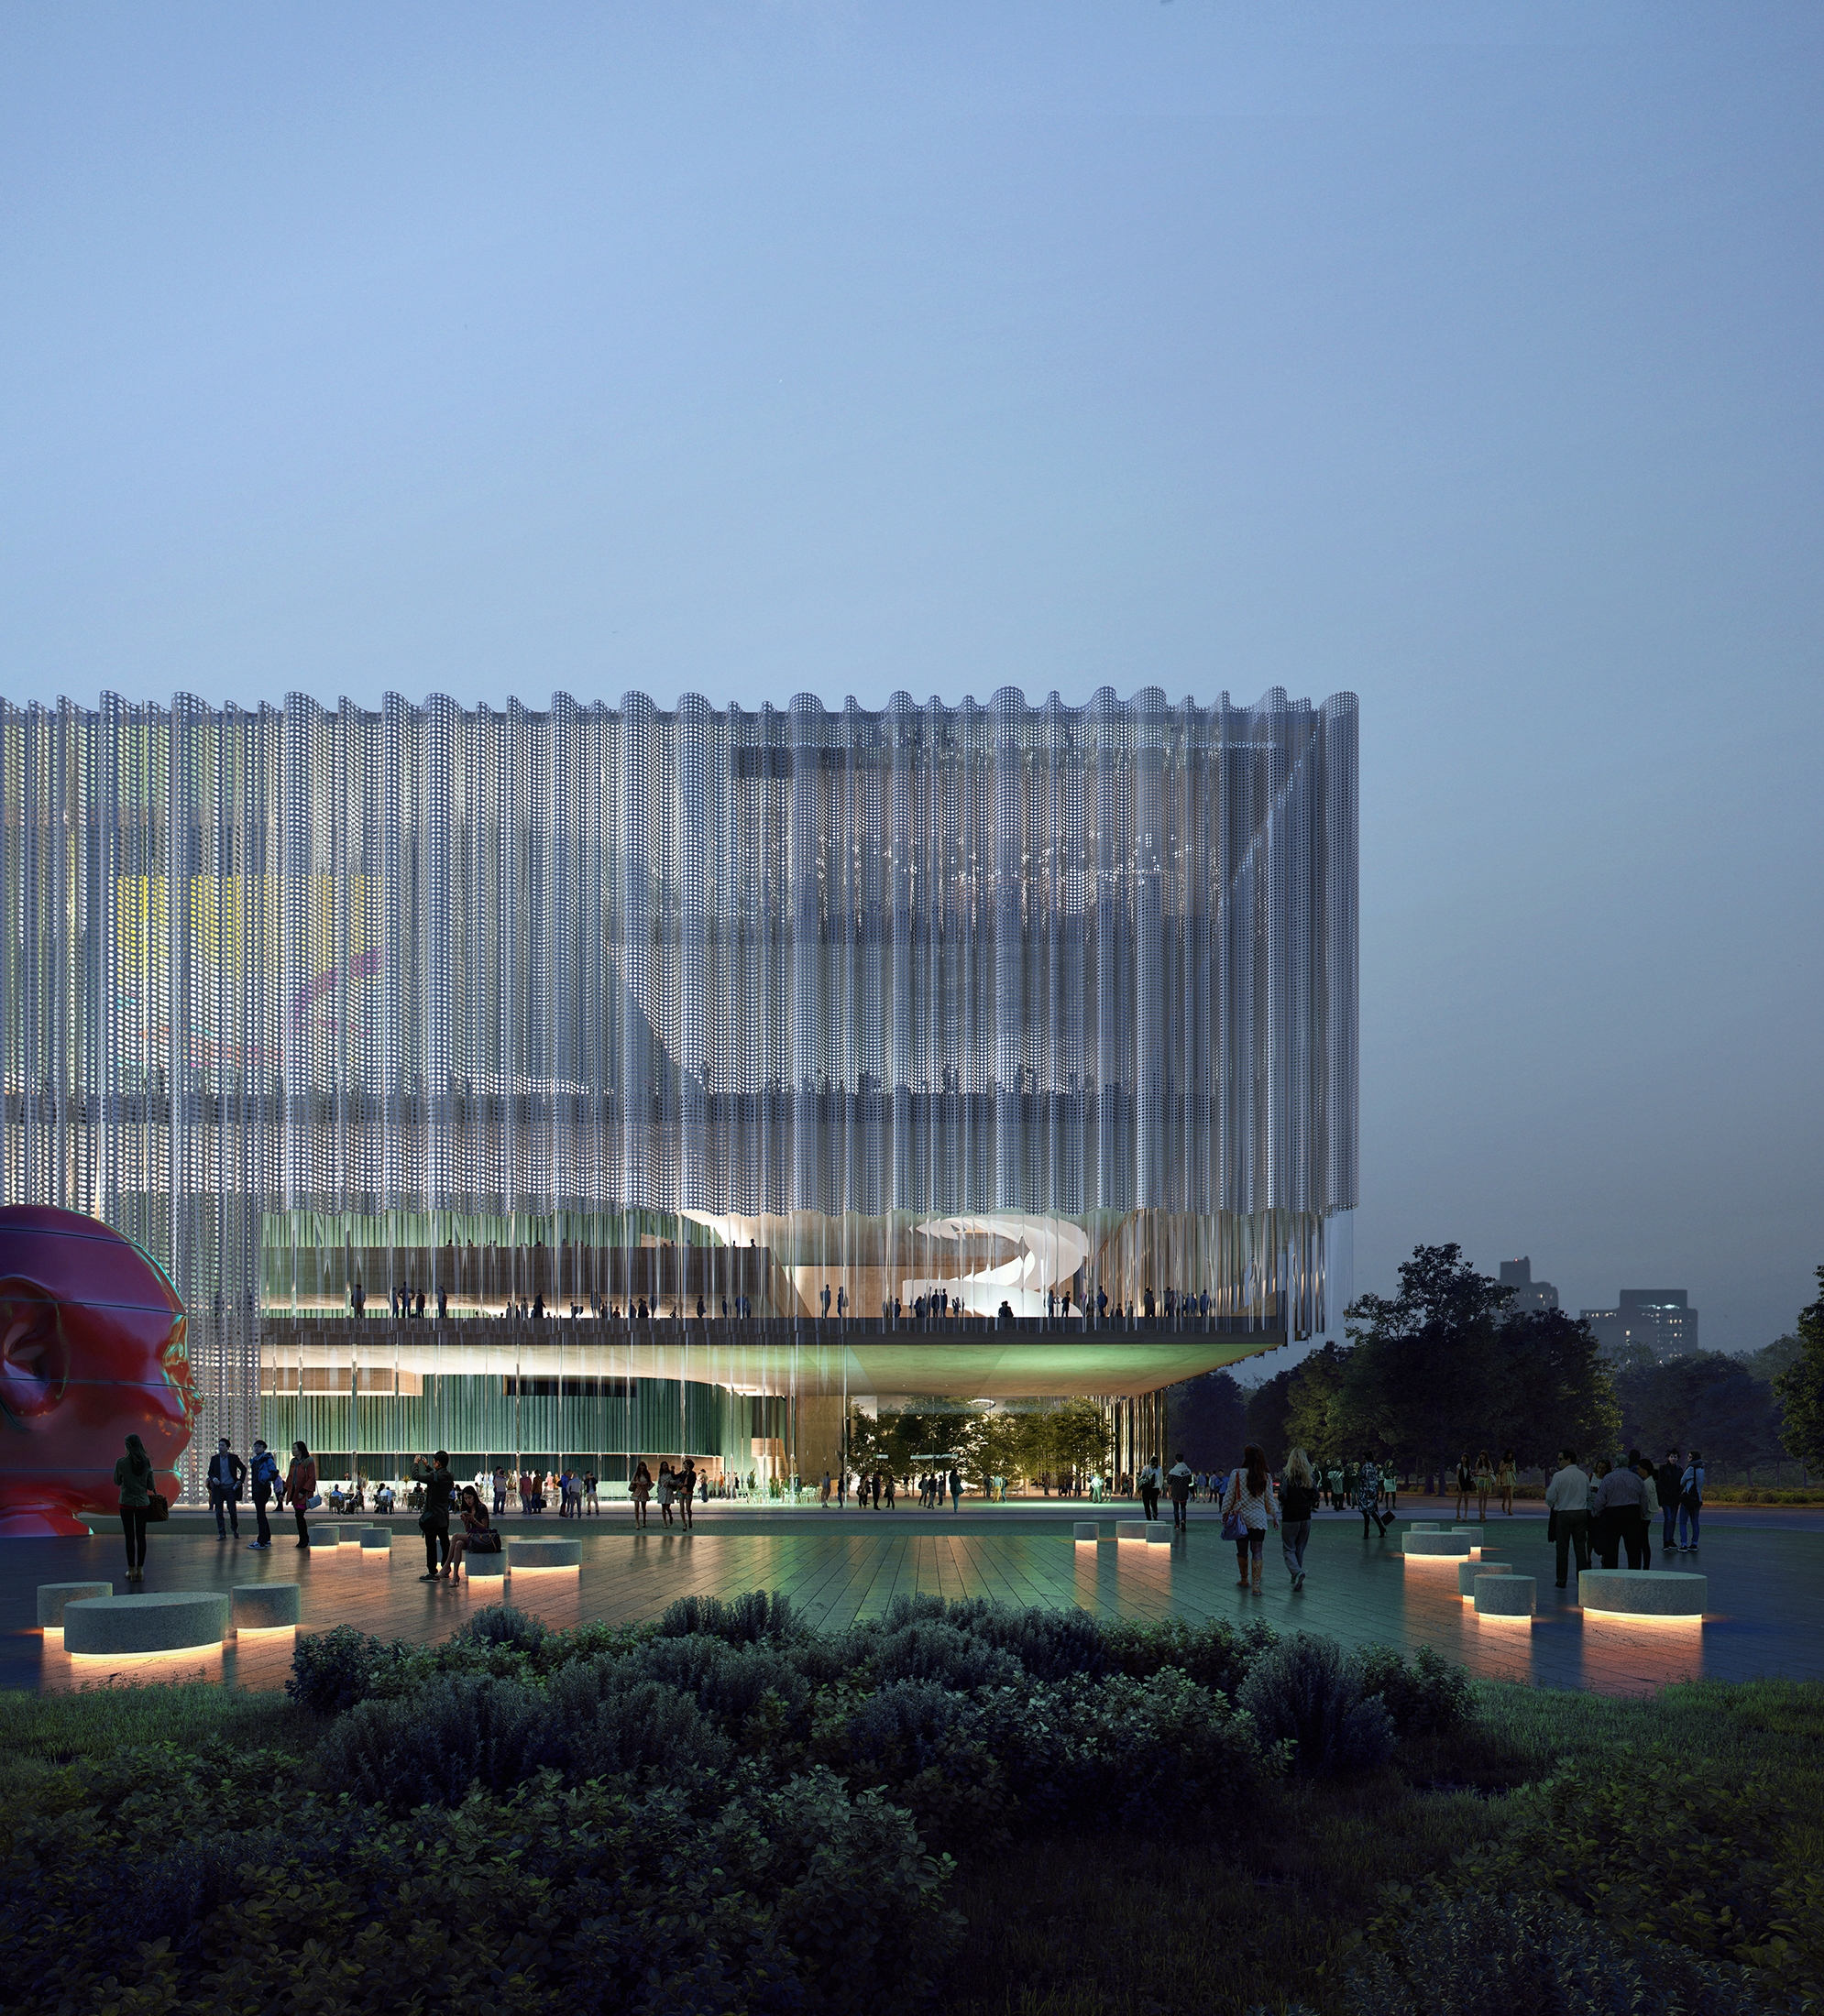 Schmidt Hammer Lassen Architects, Shenzen Performing Arts Centre, China, 2020